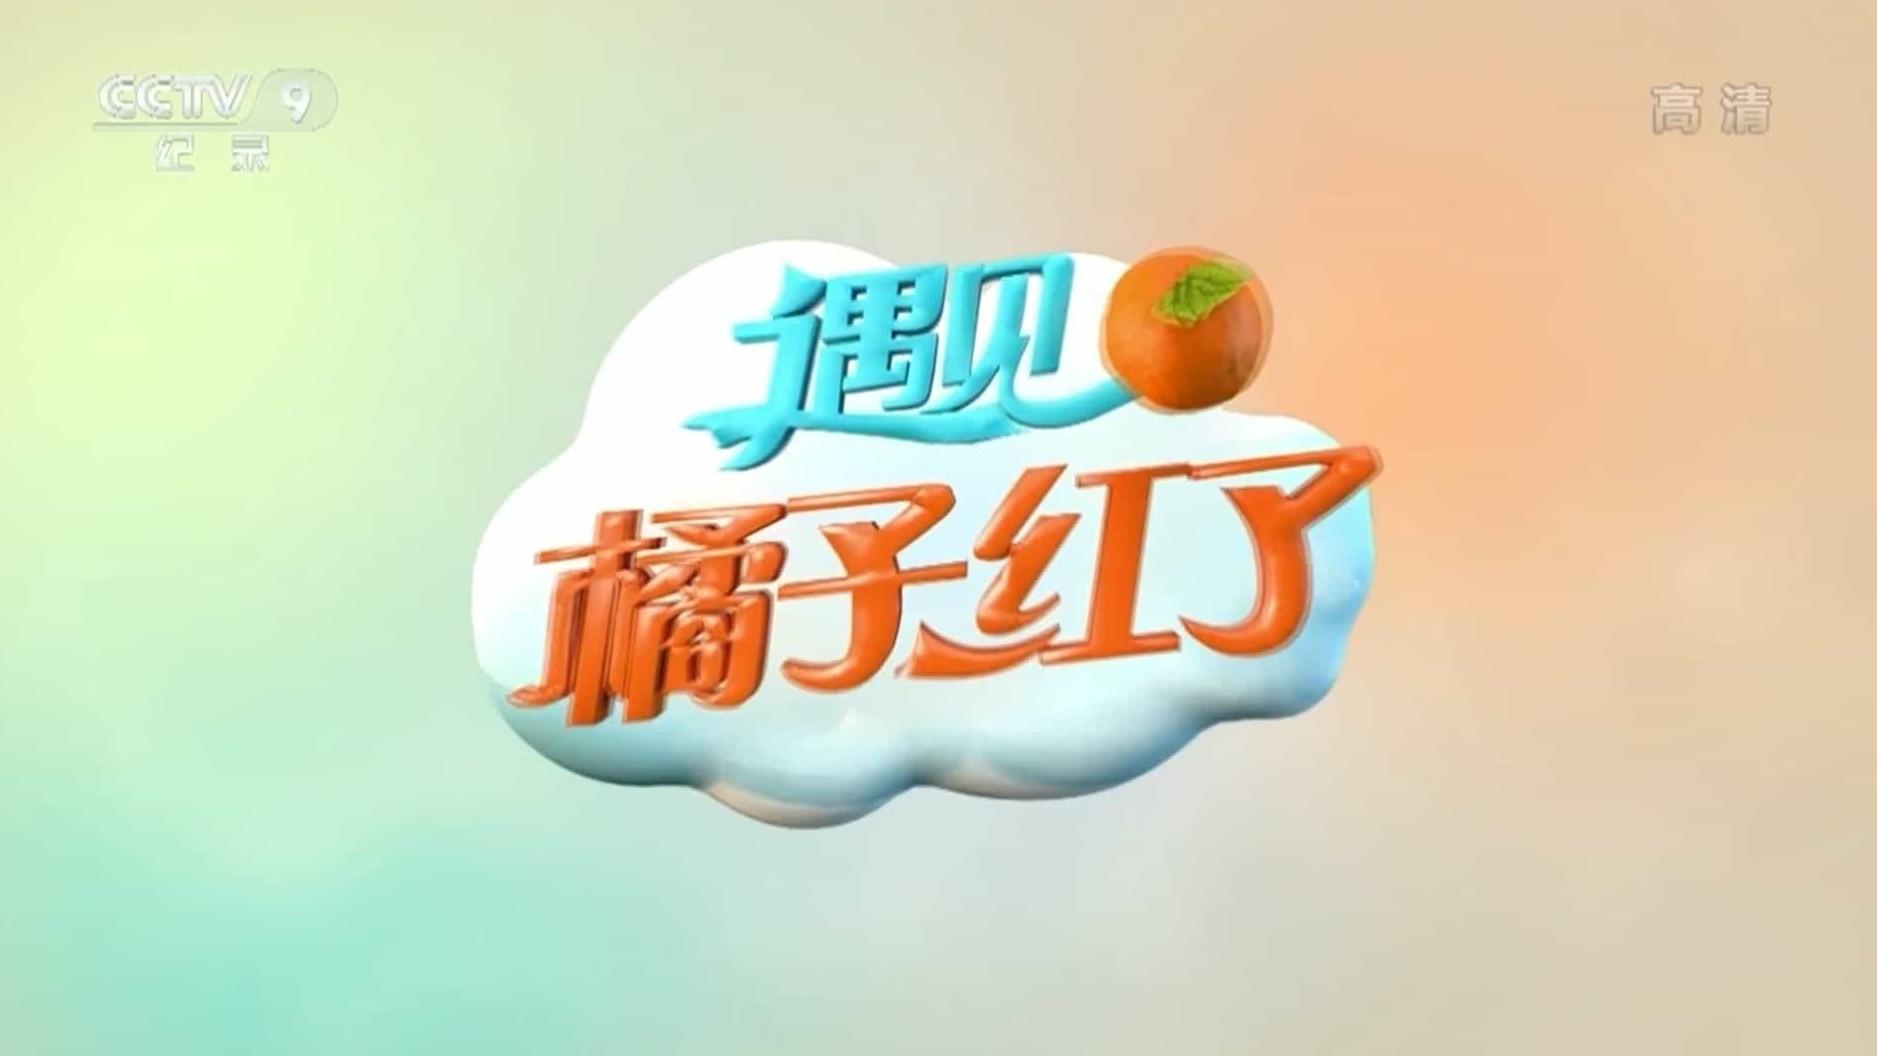 央视美食纪录片/中国美食系列《遇见·橘子红了 2018》全4集 国语中字 1080i高清下载